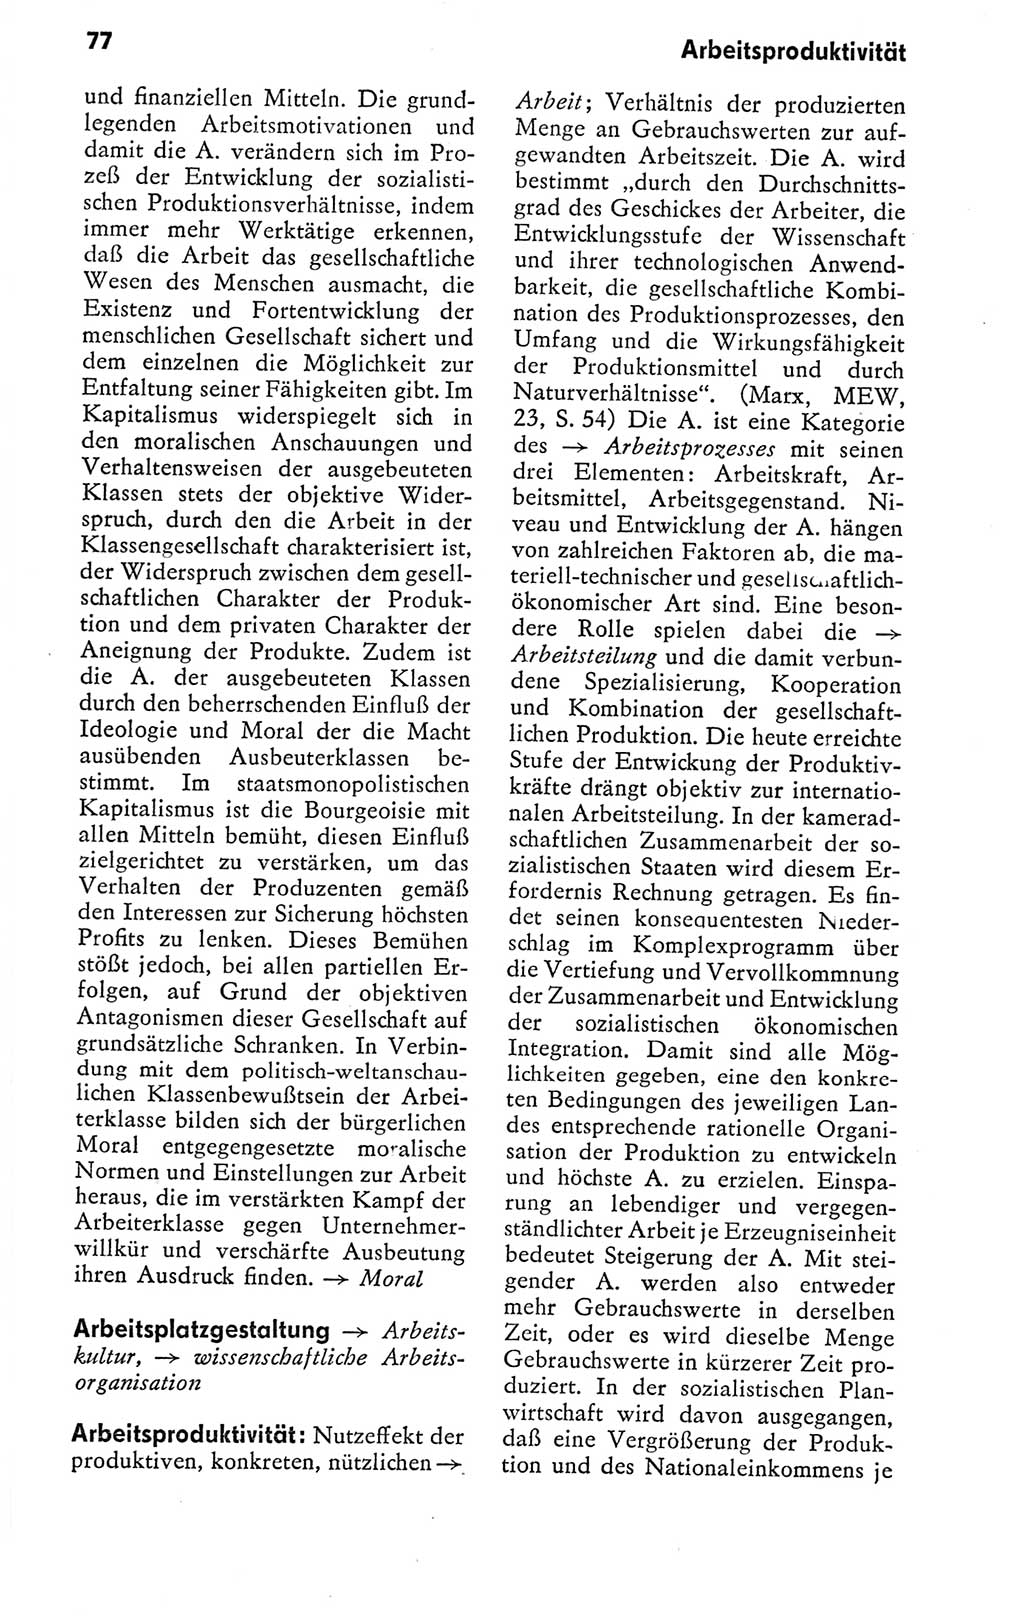 Kleines politisches Wörterbuch [Deutsche Demokratische Republik (DDR)] 1978, Seite 77 (Kl. pol. Wb. DDR 1978, S. 77)